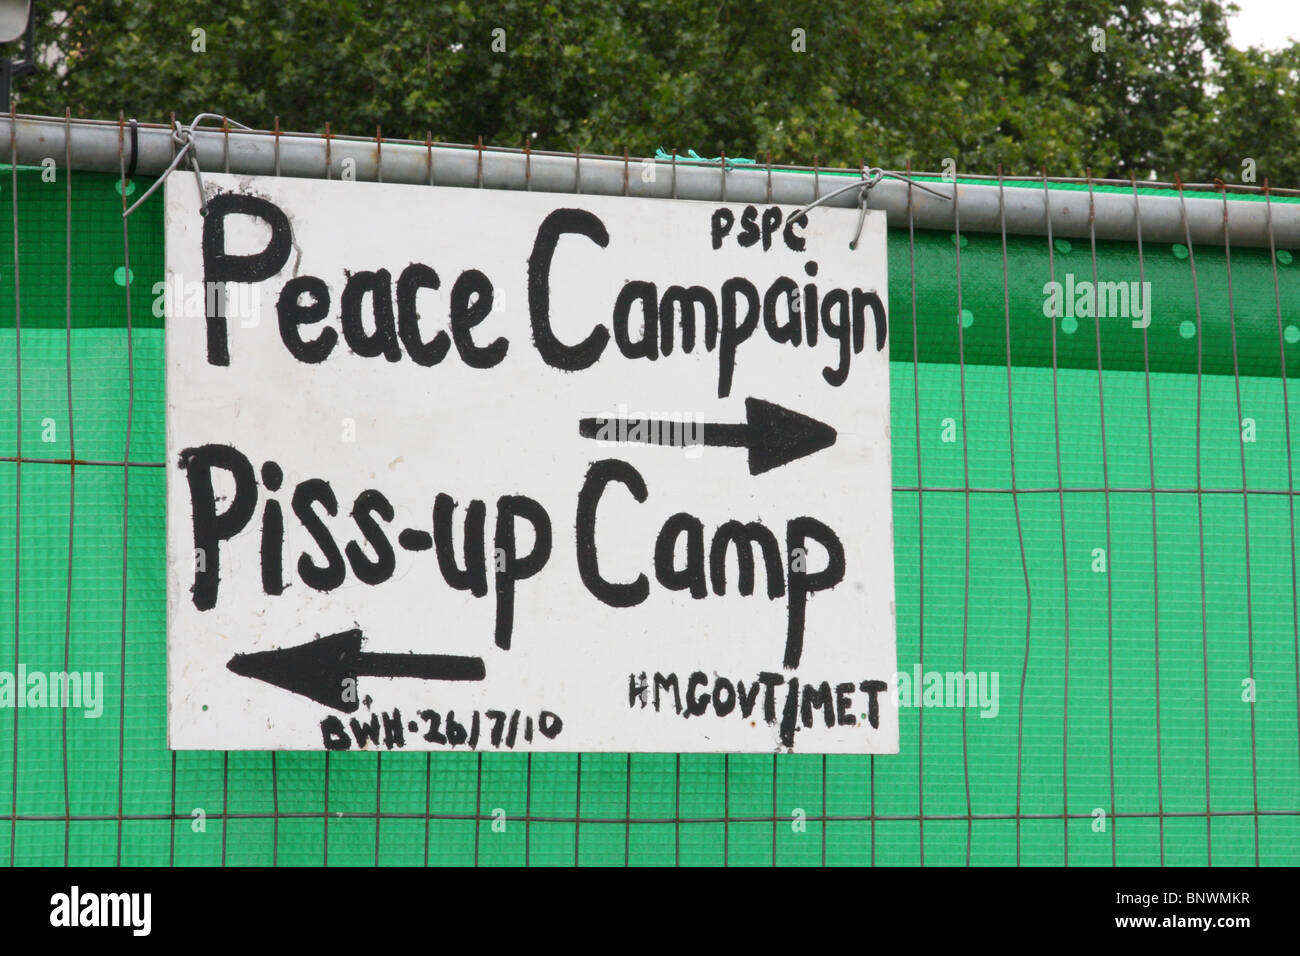 Un signe au camp pour la paix dans la région de Parliament Square, Westminster, Londres, Angleterre, Royaume-Uni Banque D'Images